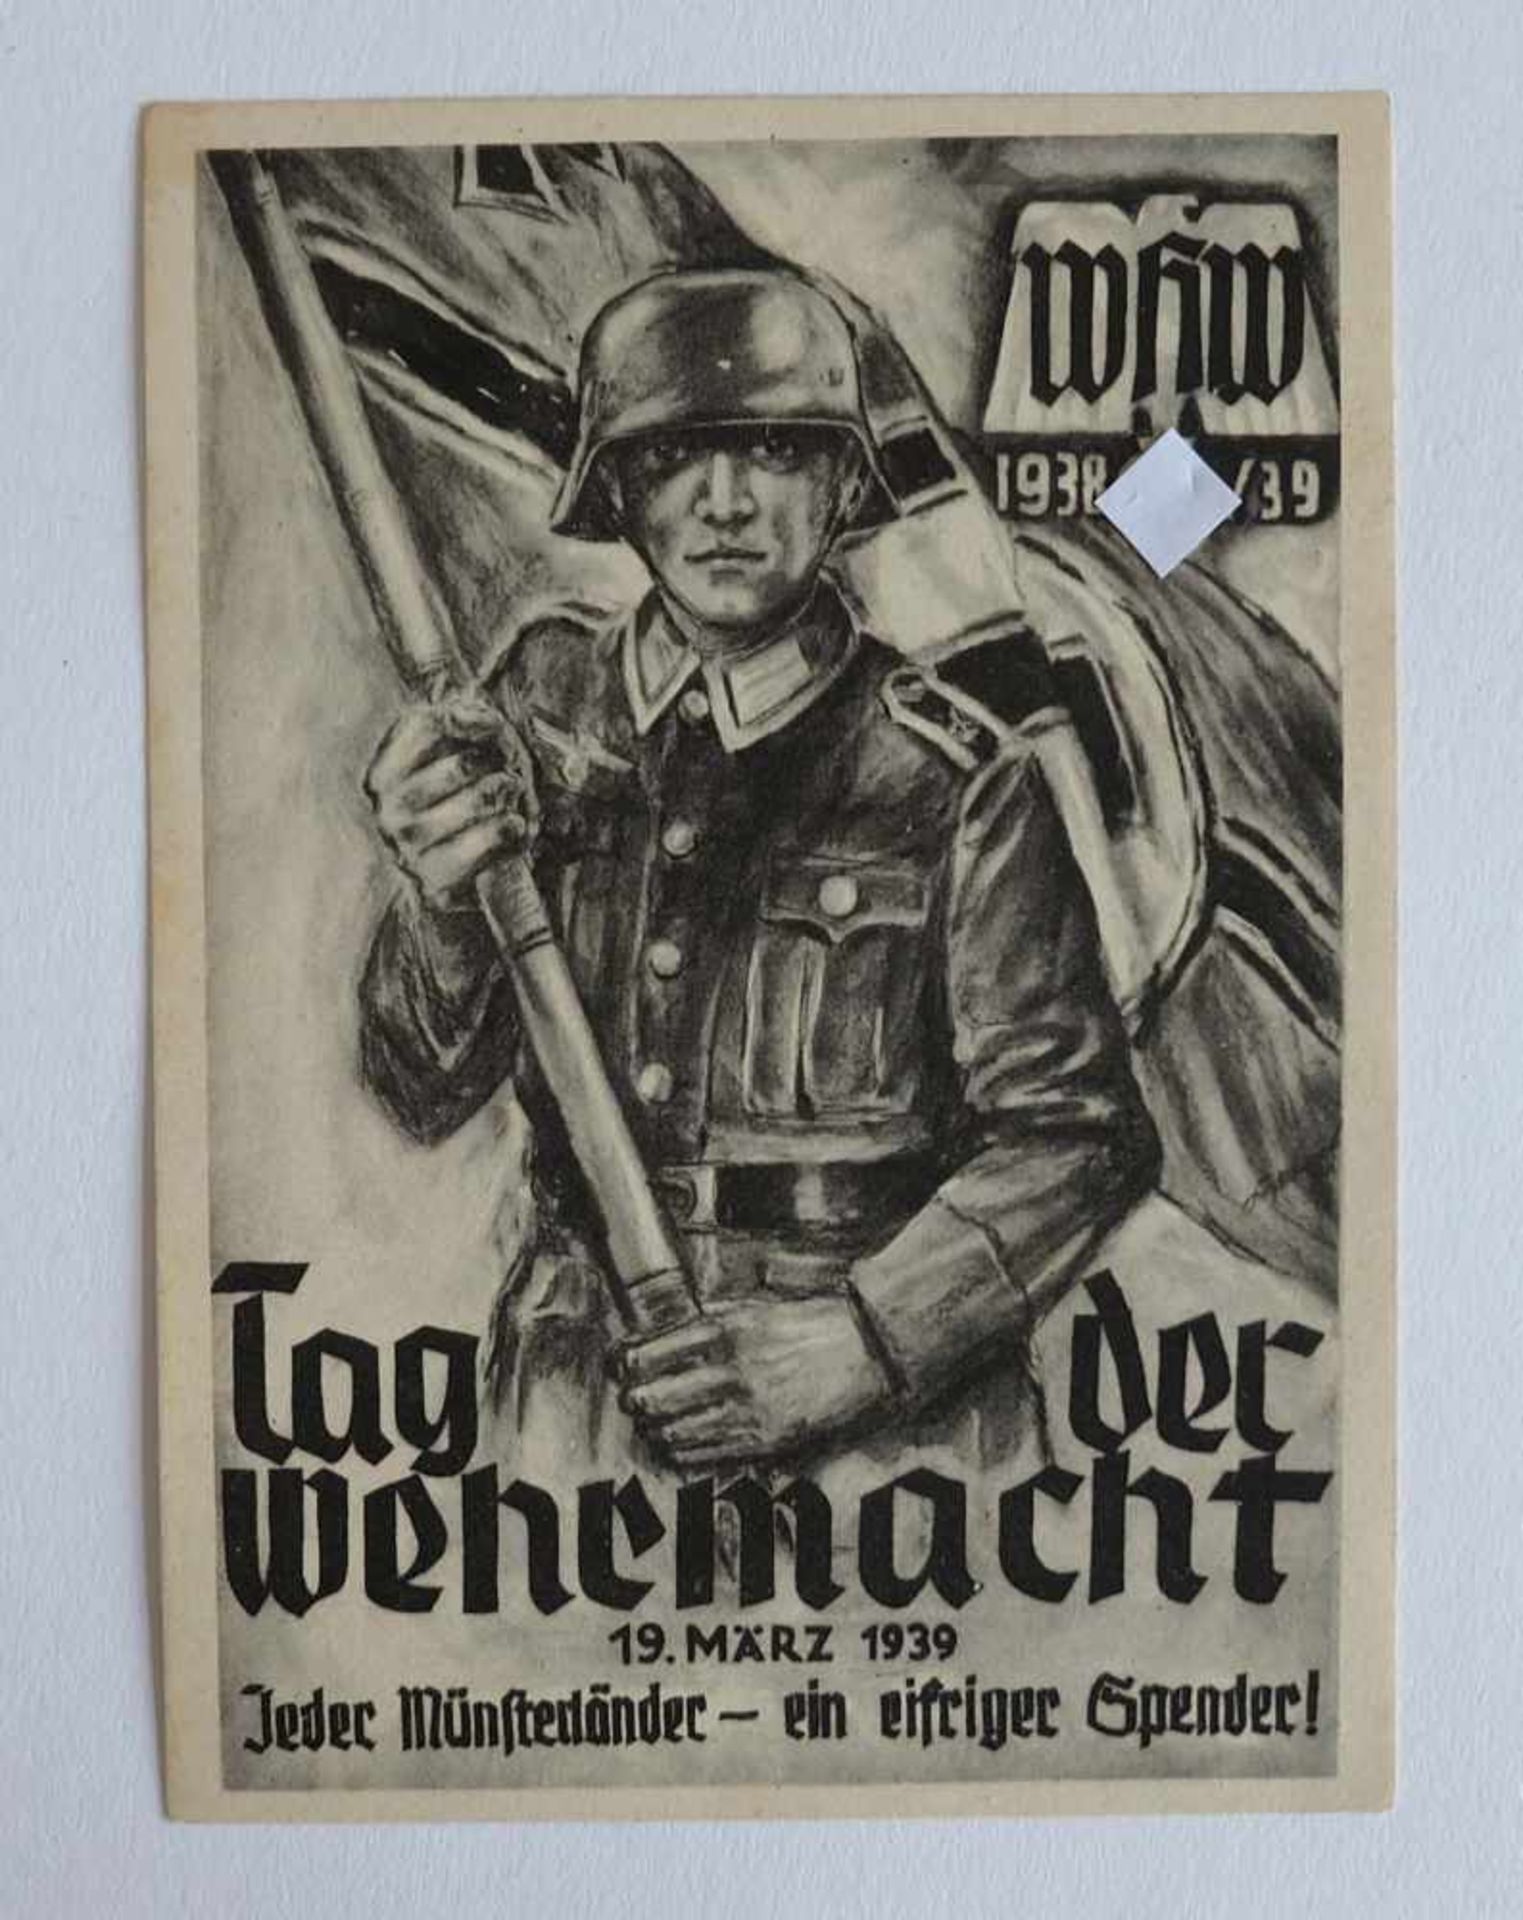 DEUTSCHES REICH, 1933-45, Propagandakarte, WHW 1938/39, Tag der Wehrmacht 19.März 1939, ungelaufen